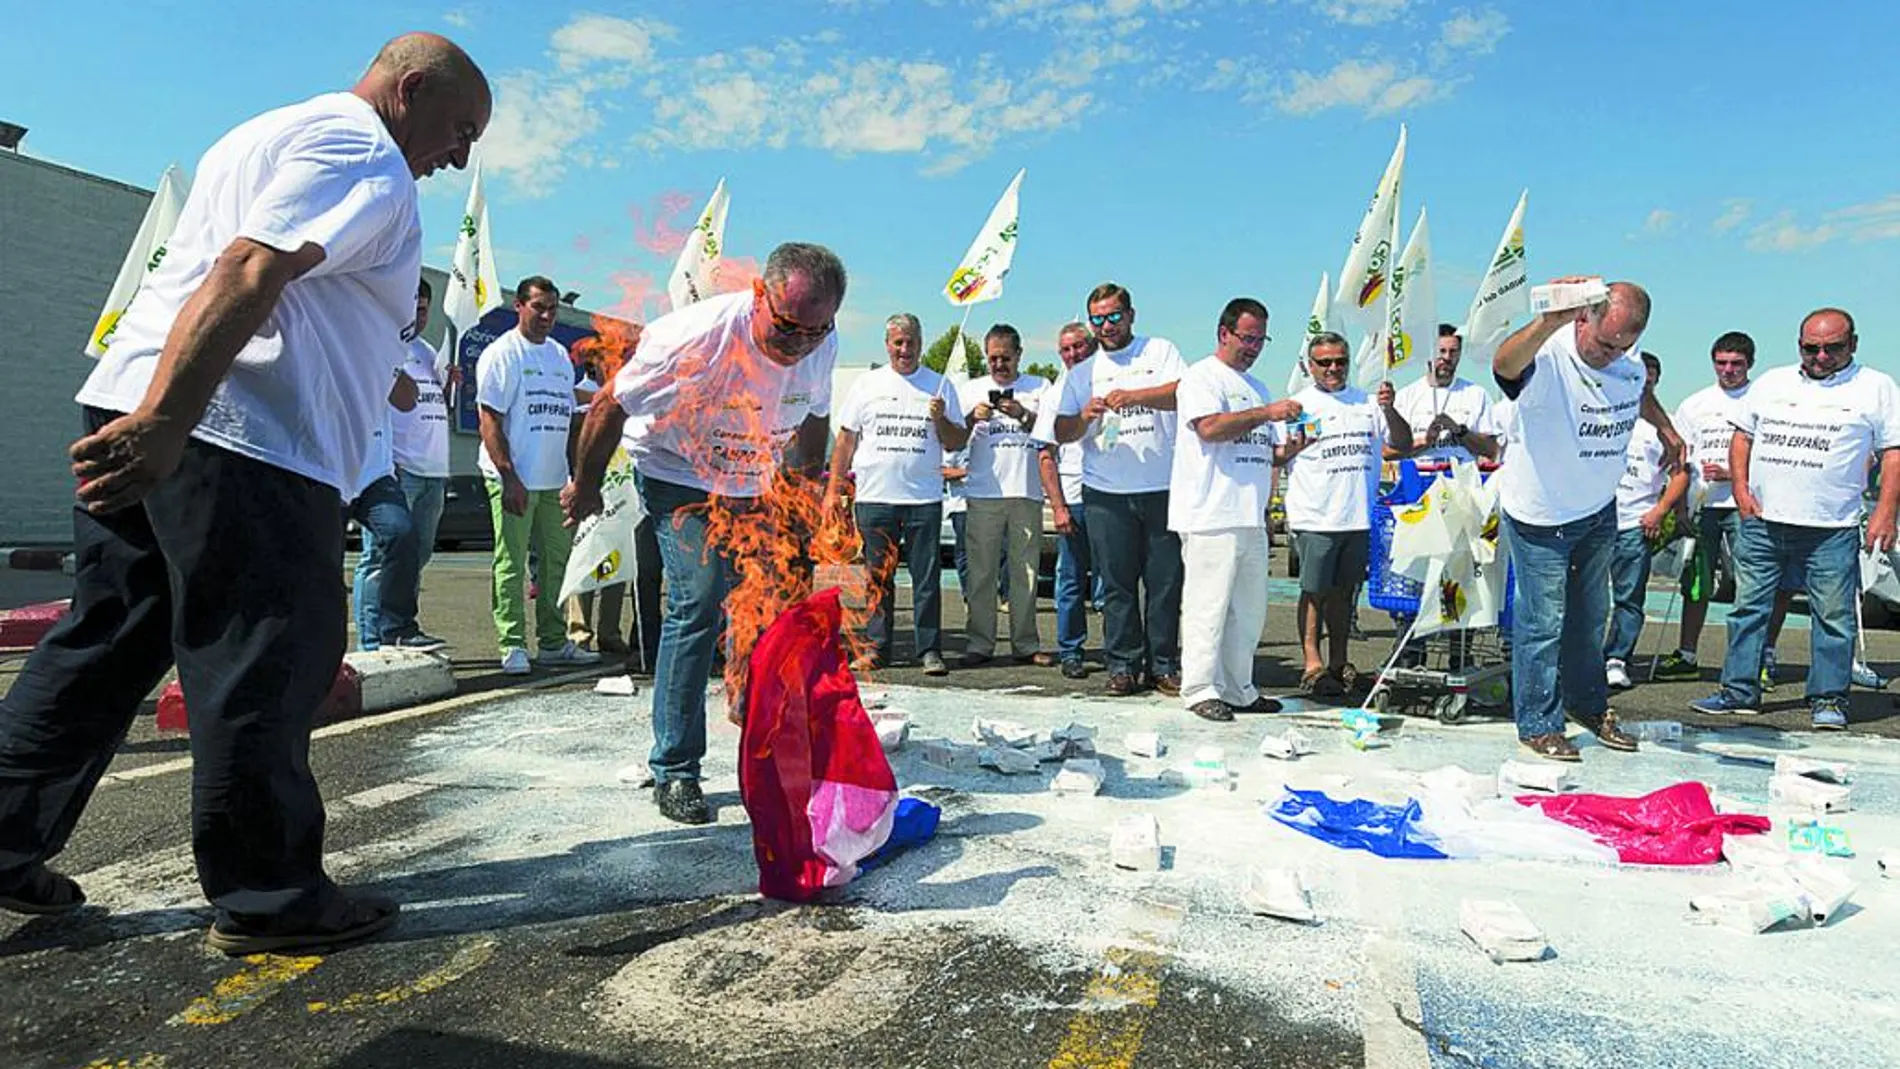 Varios ganaderos vierten leche francesa y queman una bandera del país galo